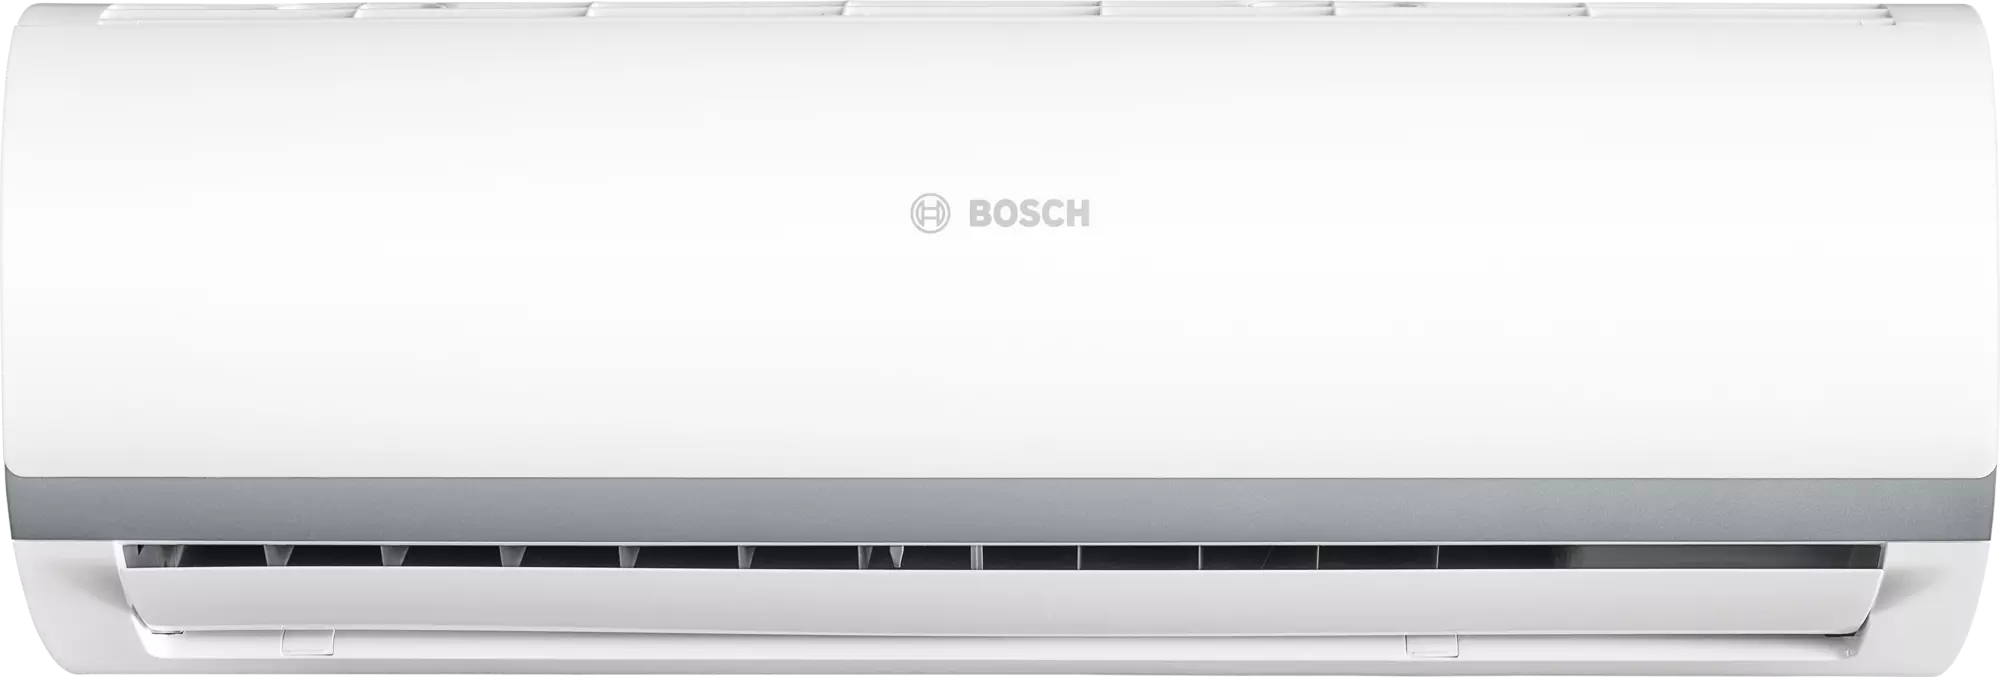 Кондиционер сплит-система Bosch CL2000 RAC 2,6 kW цена 18499.00 грн - фотография 2